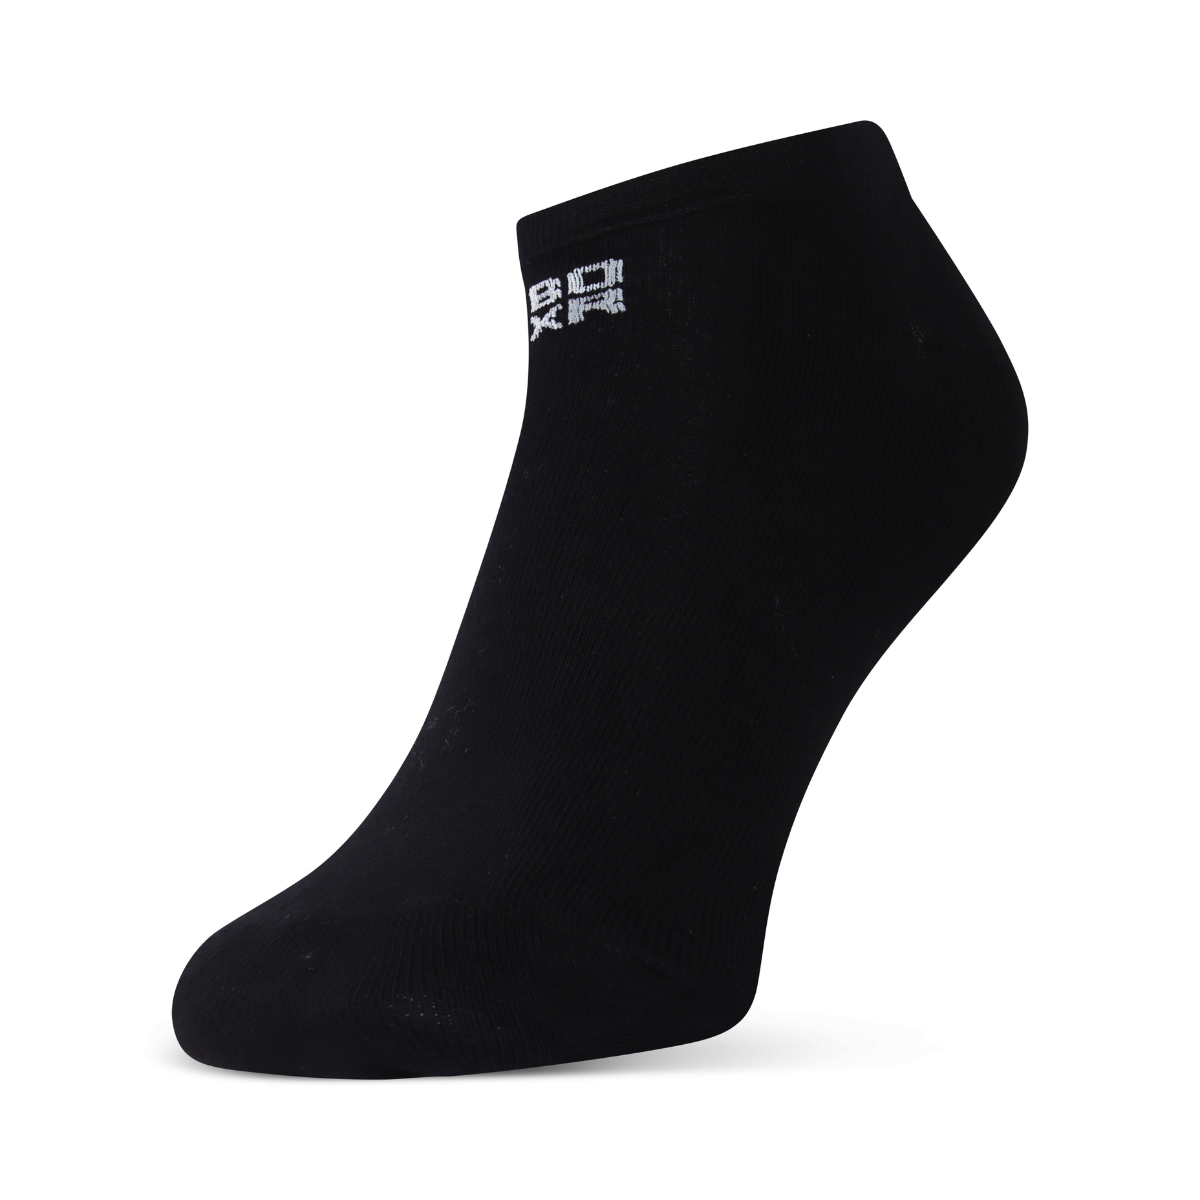 BOXR | Bamboo Sneaker Socks 2-Pack Black